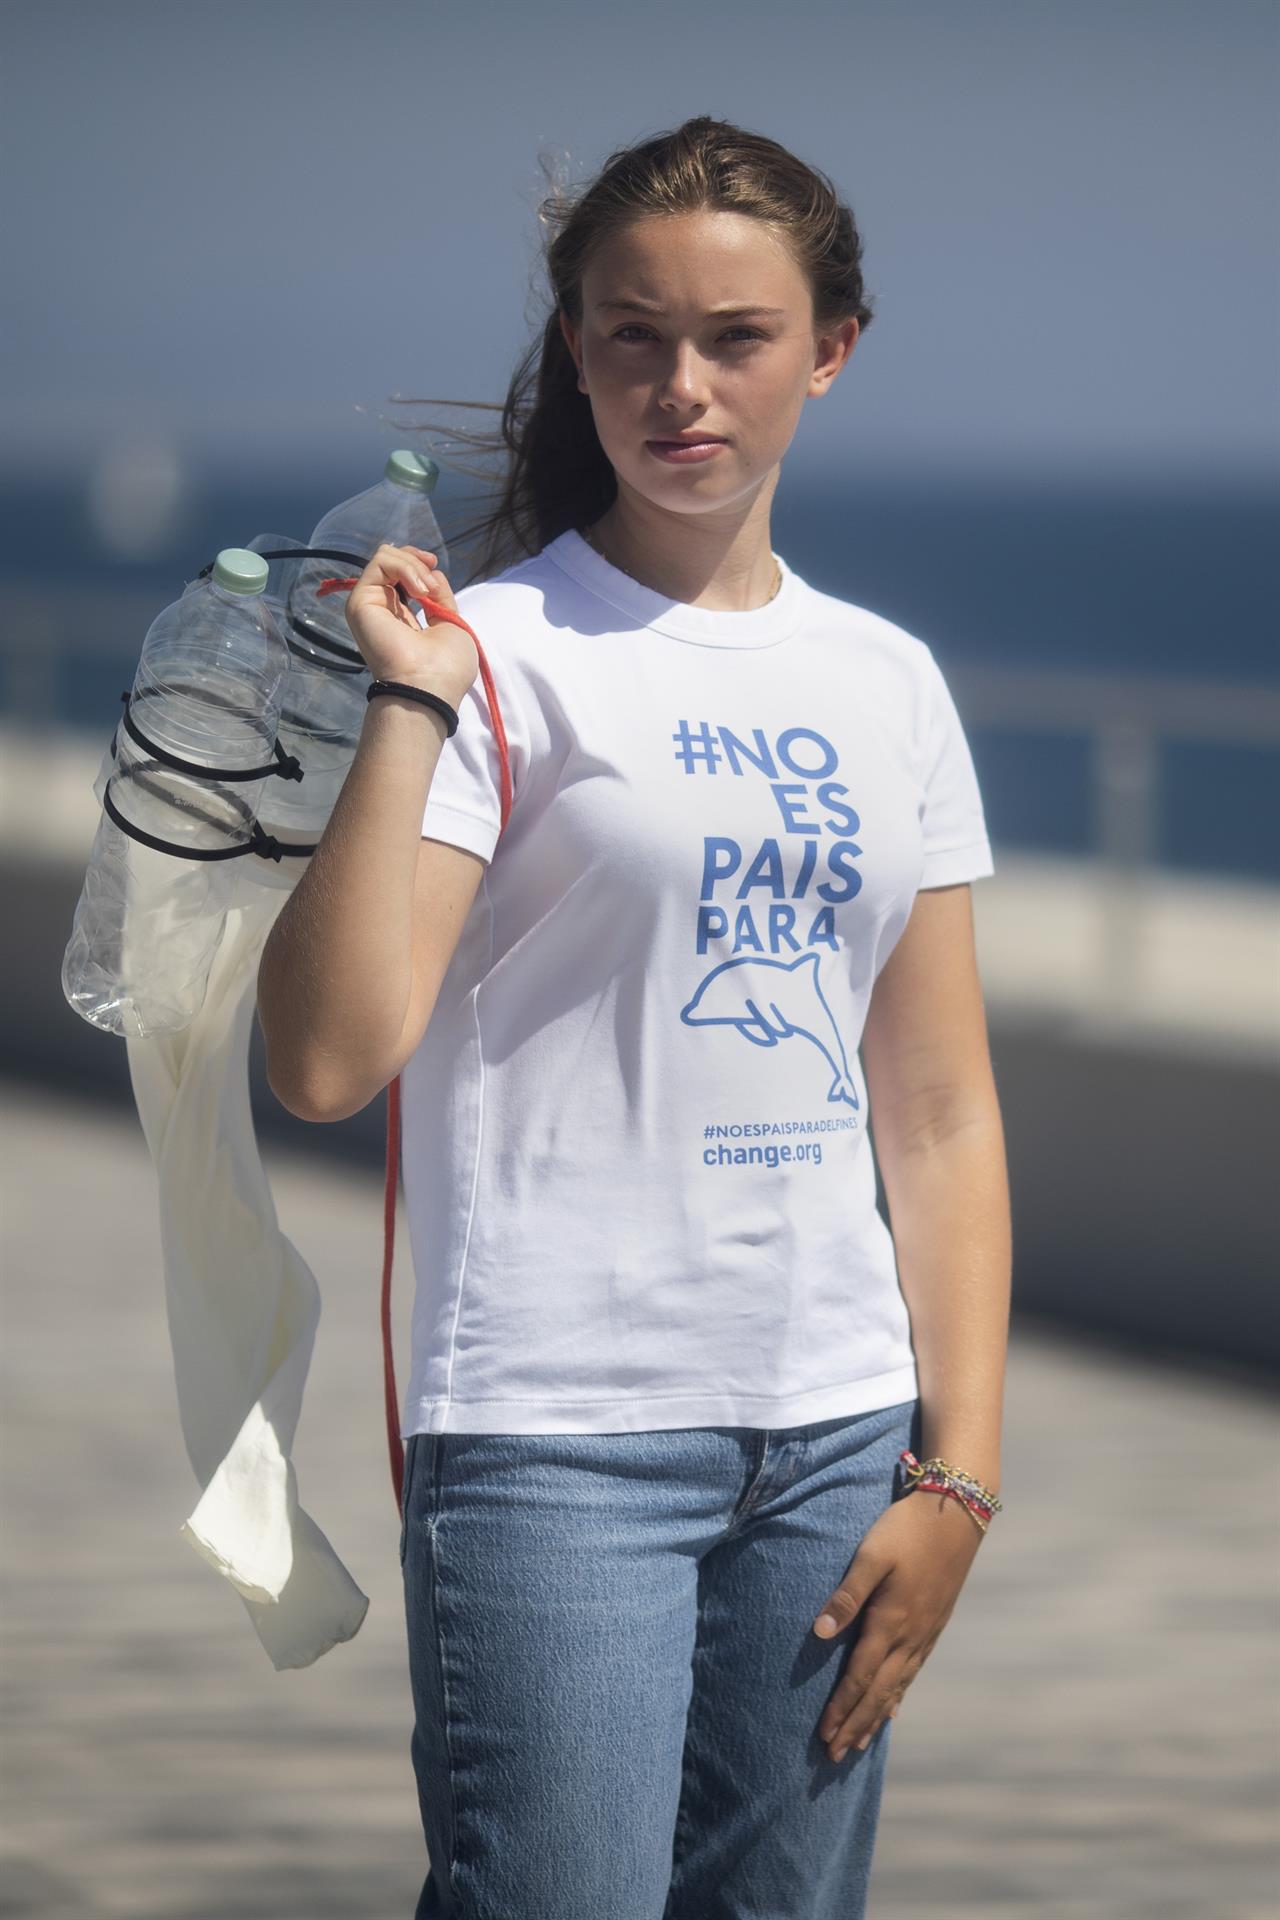 Olivia Mandle, que vive en Barcelona, tiene 15 años y ya le llaman la 'Greta Thunberg española' por su activismo en favor del medio ambiente, contra el cambio climático y la protección de los animales, posa durante la entrevista con Efe en la que denuncia que "Los políticos no quieren escuchar, sólo atienden a las grandes empresas y sus intereses económicos".